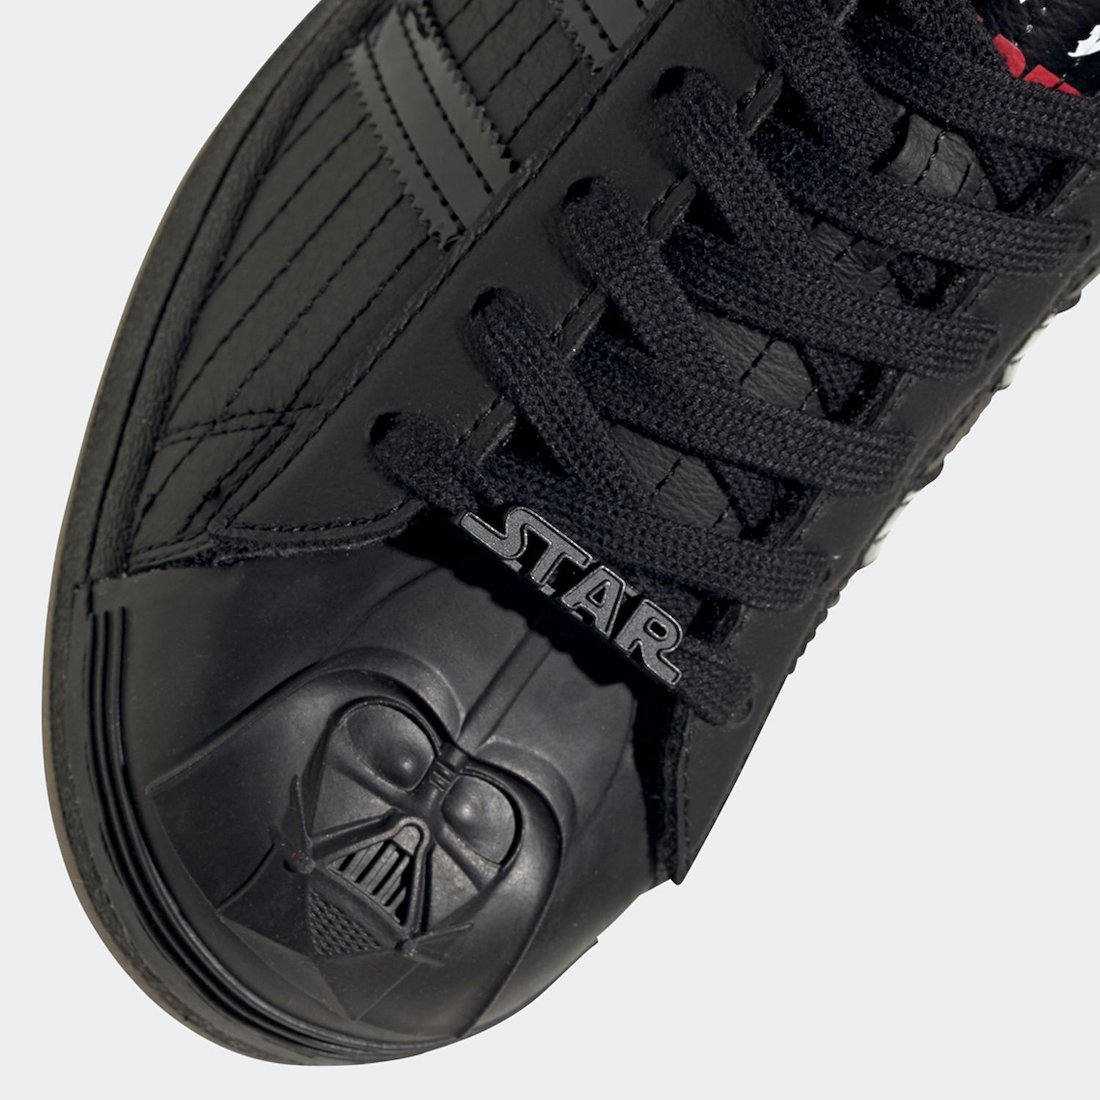 Star Wars adidas Superstar Darth Vader FX9302 Release Date Info